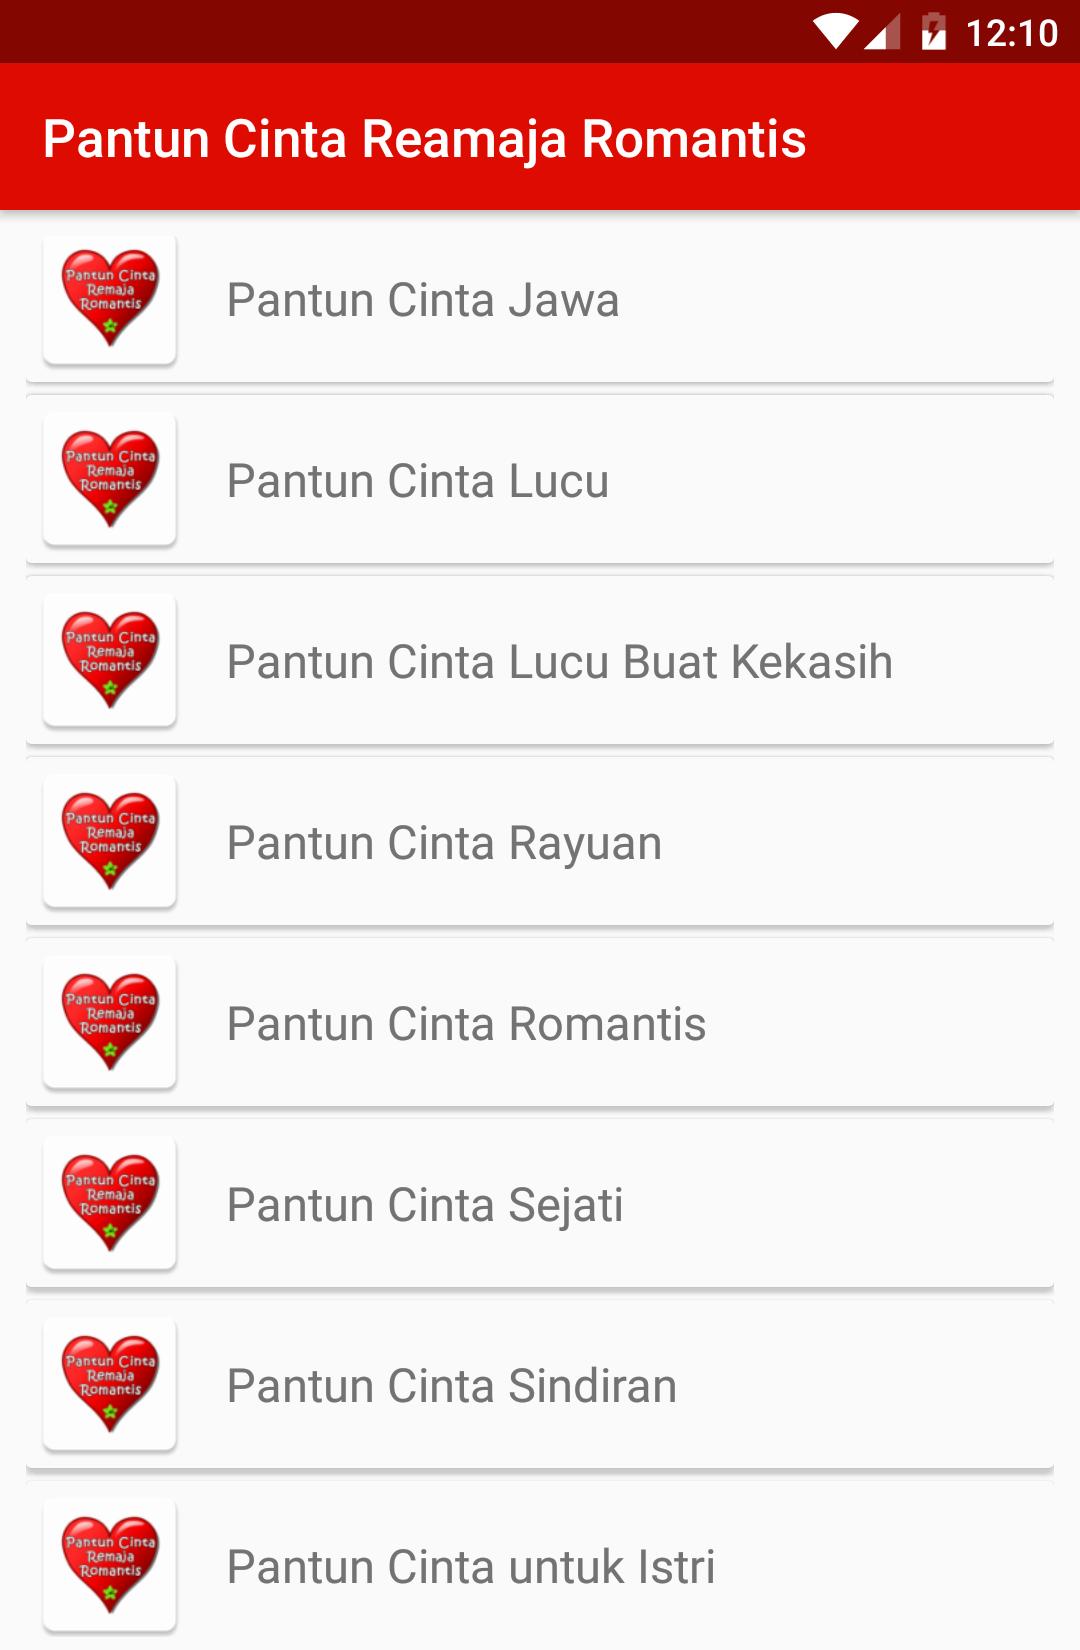 Pantun Cinta Remaja Romantis For Android Apk Download